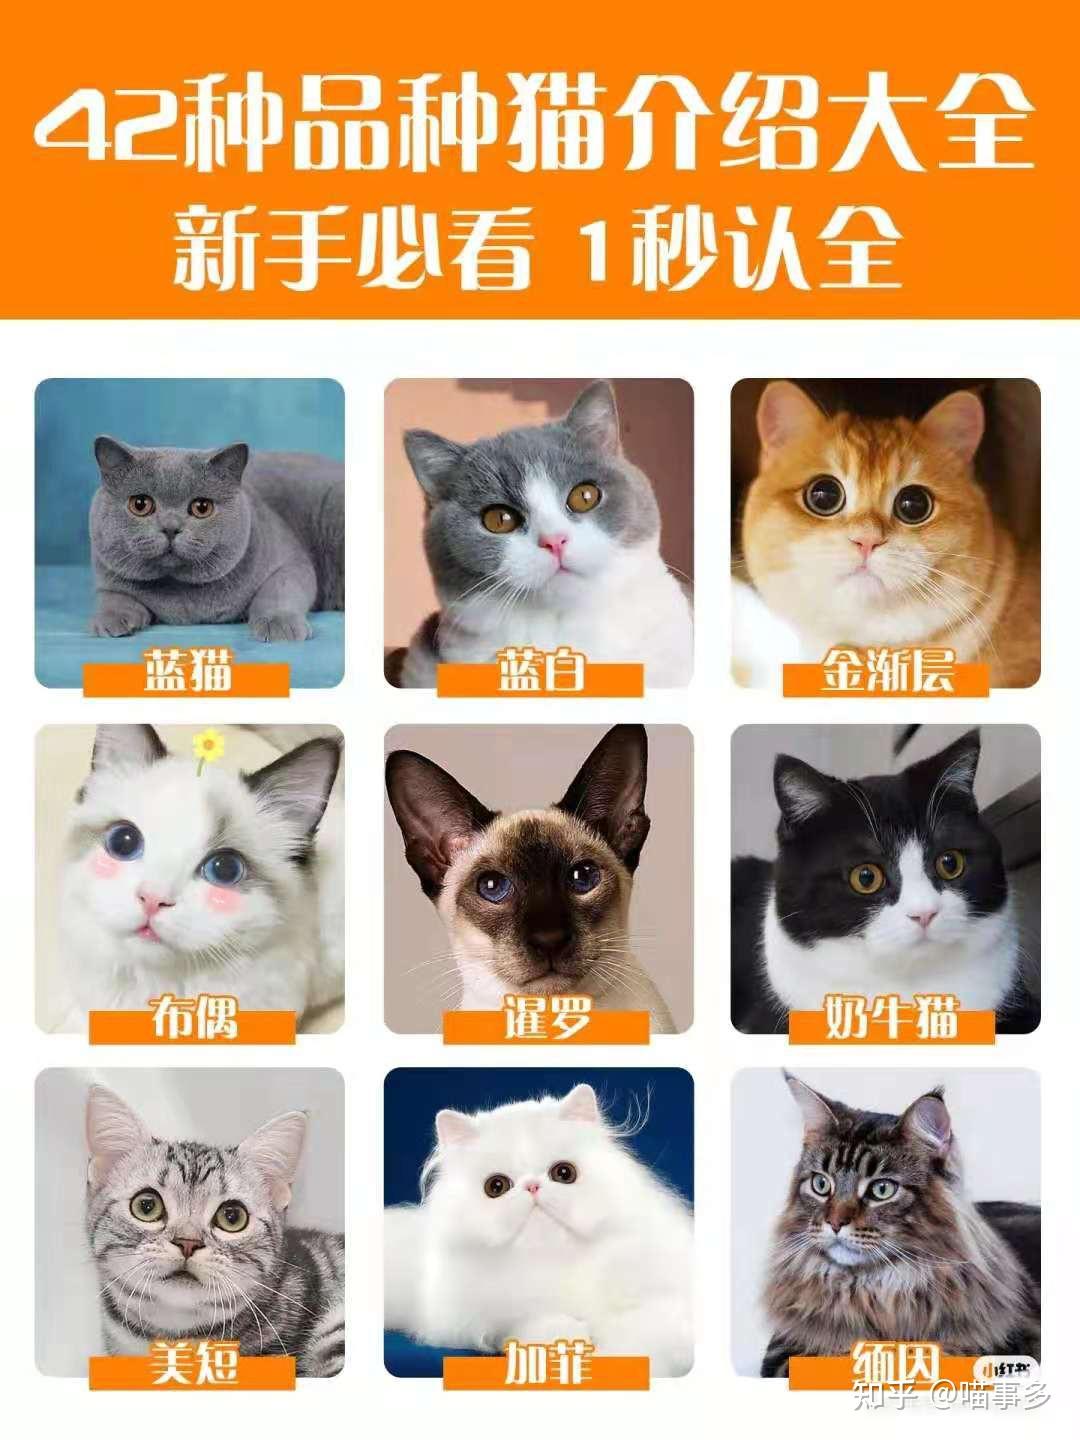 猫的品种有哪些分类，猫的品种图片名字大全及价格介绍 - 唐山味儿